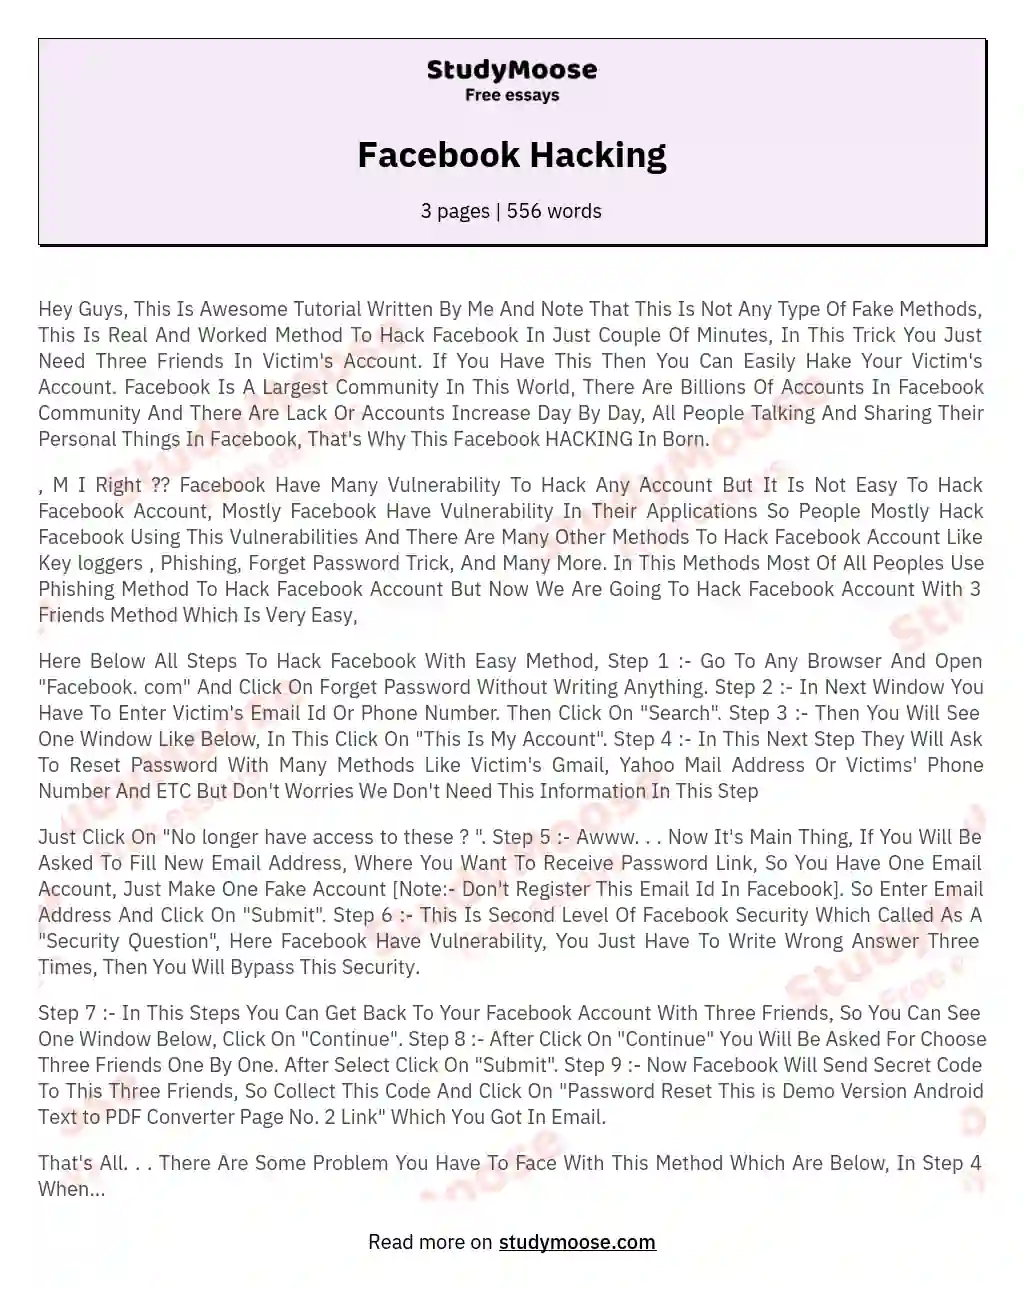 Facebook Hacking essay